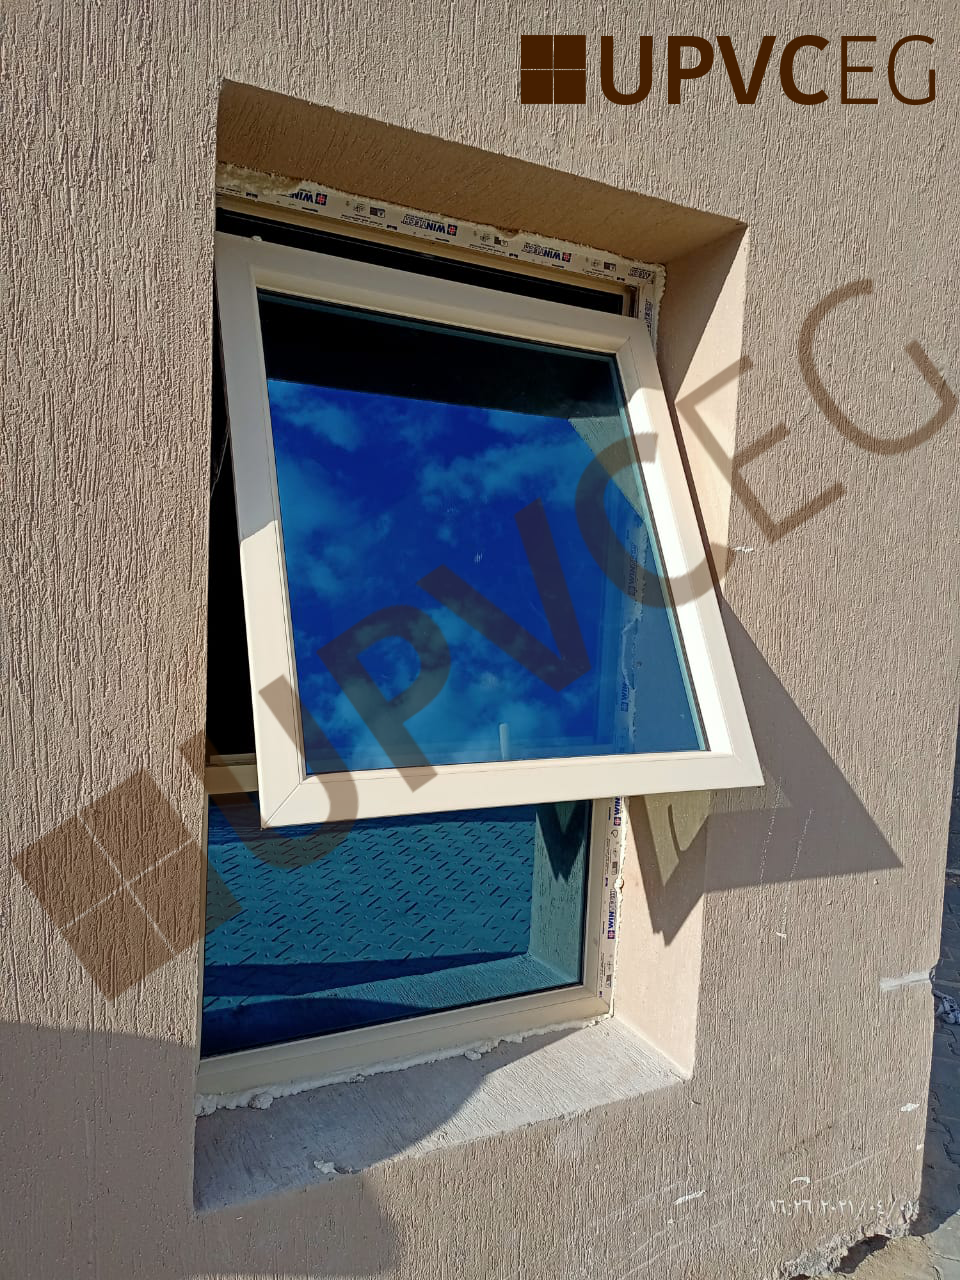 UPVC / PVC window open to outside